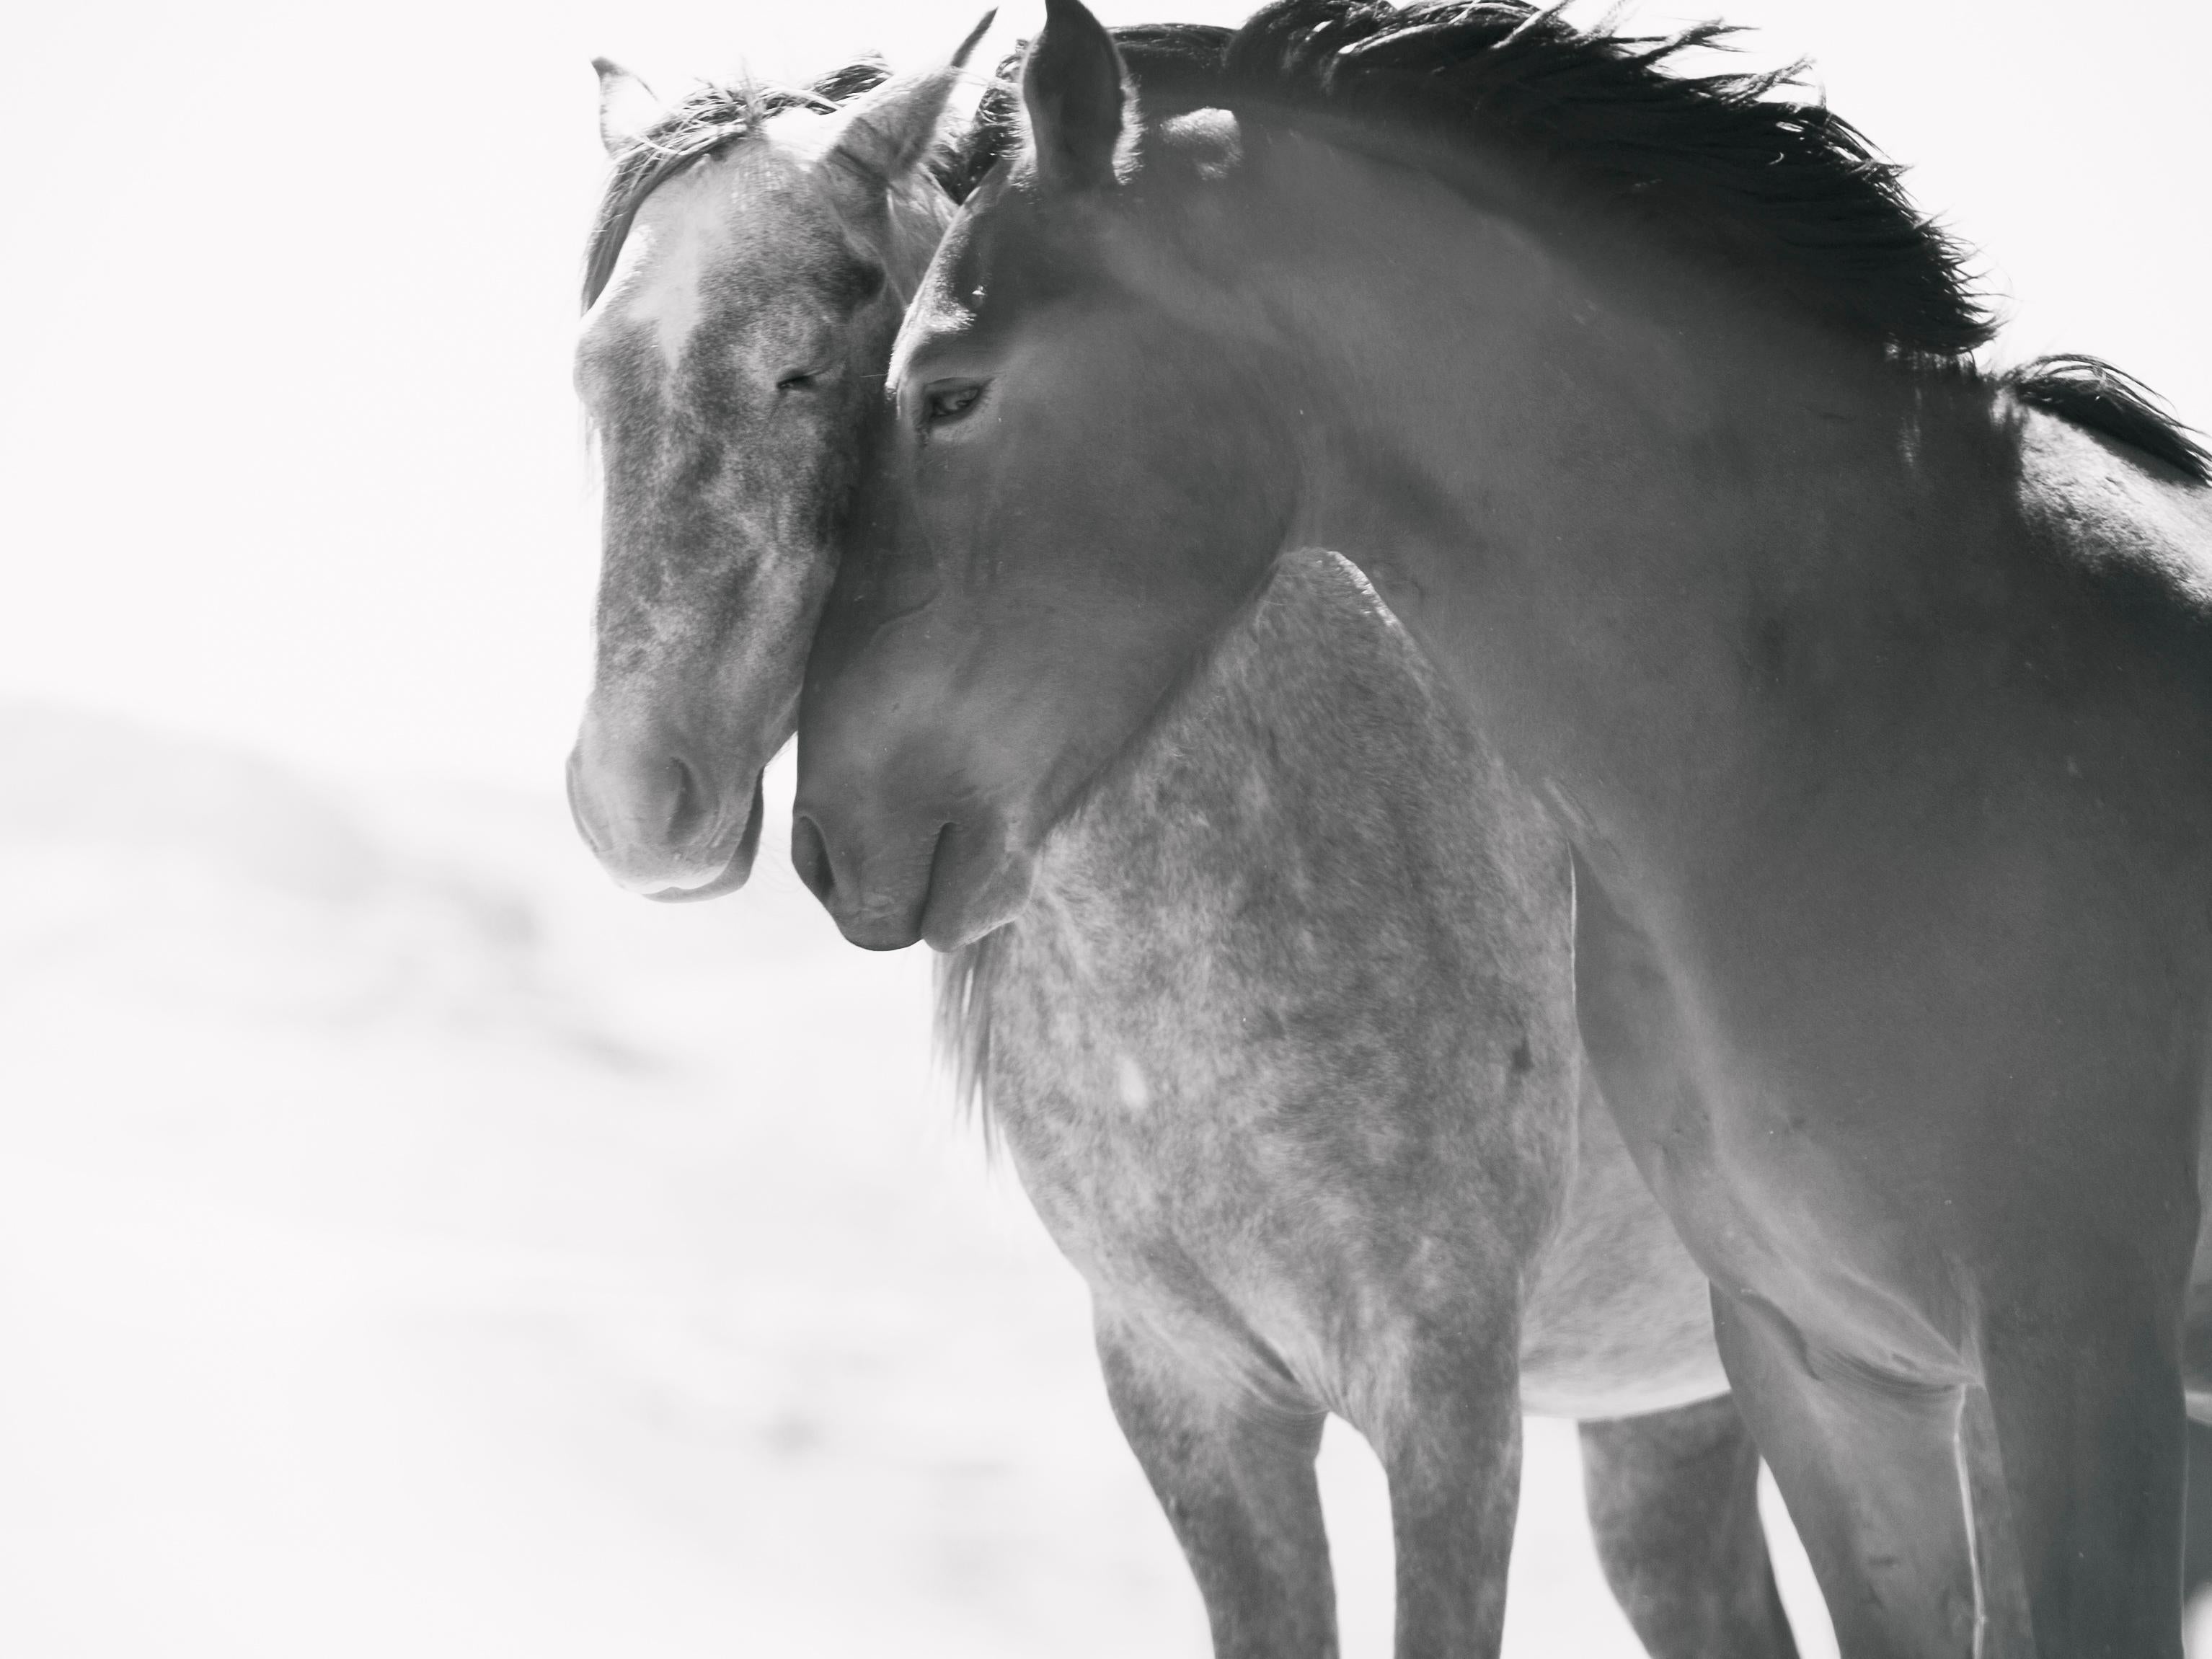 Black and White Photograph Shane Russeck - "Soulmates" 40x60 Photographie en noir et blanc de chevaux sauvages Mustangs Photographie